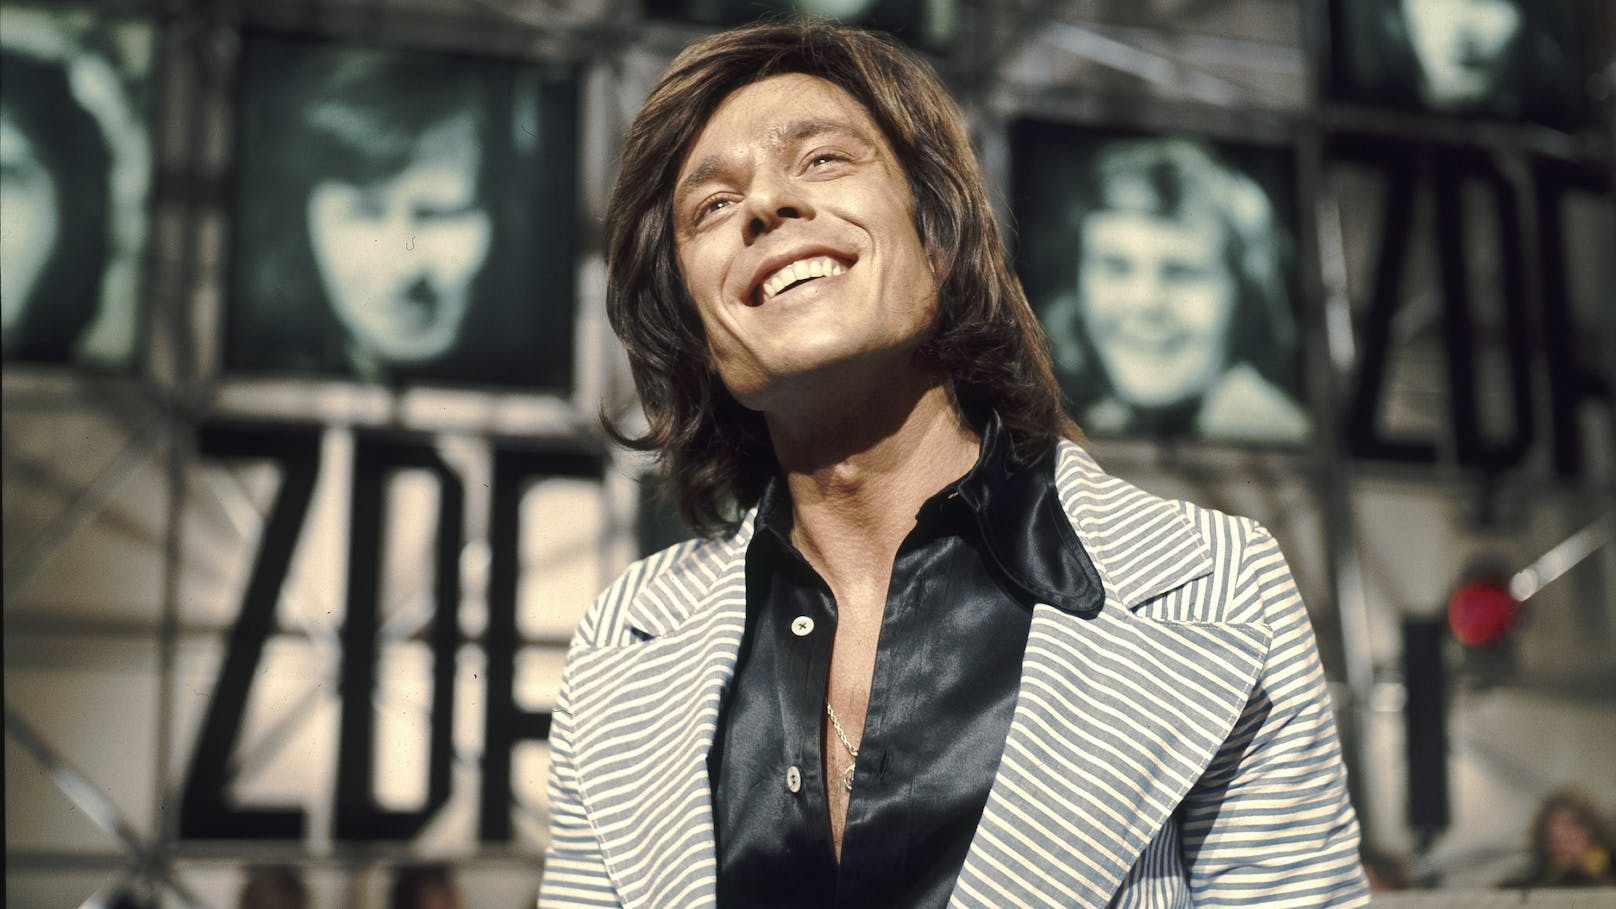 1976 gelang Jürgen Drews der Durchbruch! Mit "Ein Bett im Kornfeld" stürmte er auf Platz 1 der deutschen Charts, Platz 2 in Österreich.